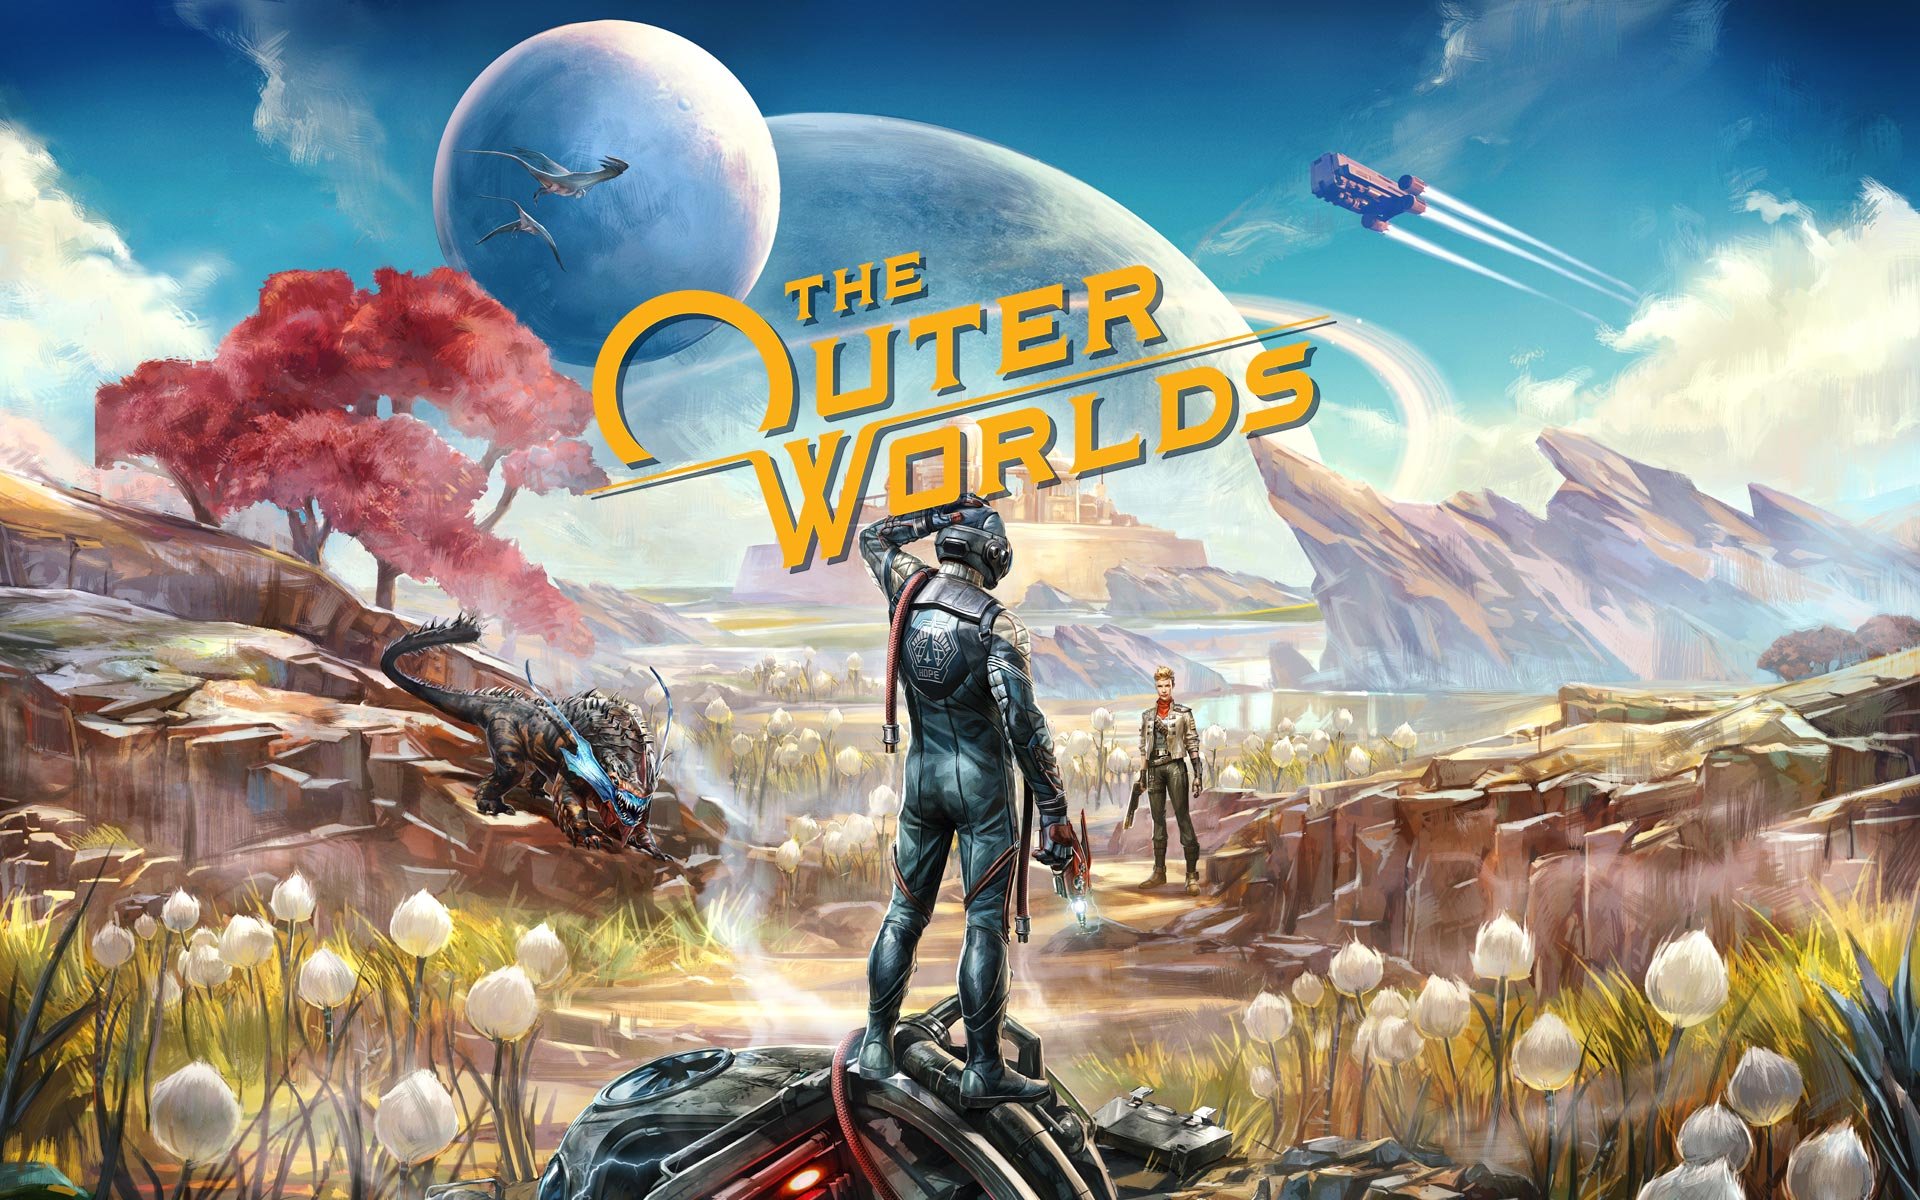 Compre The Outer Worlds a partir de R$ 249.90